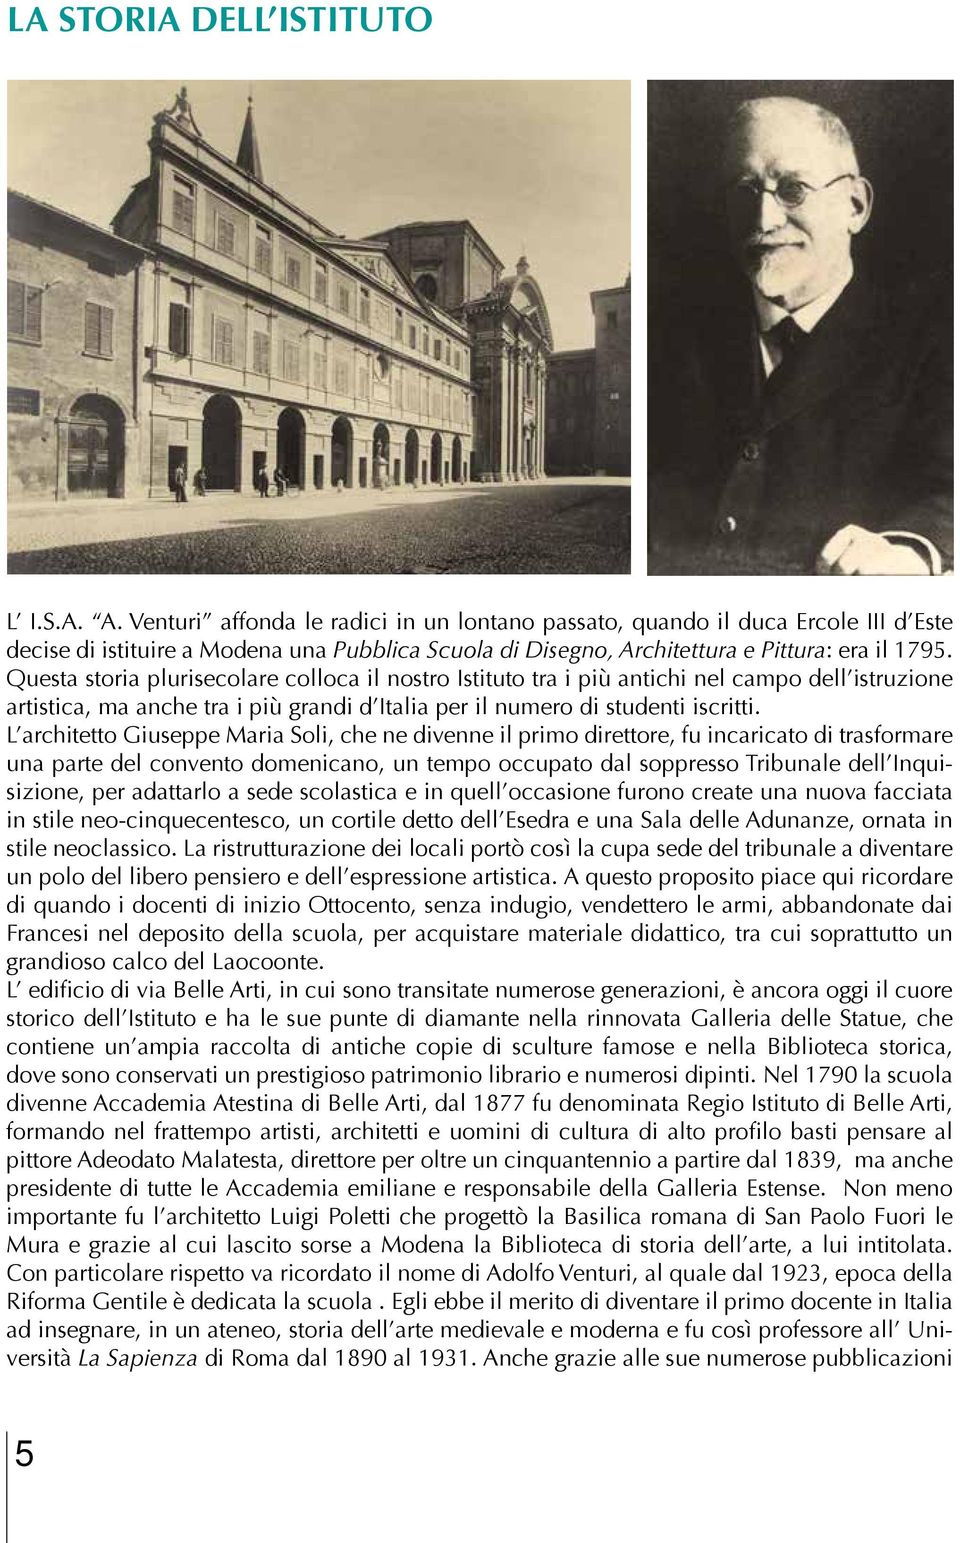 Questa storia plurisecolare colloca il nostro Istituto tra i più antichi nel campo dell istruzione artistica, ma anche tra i più grandi d Italia per il numero di studenti iscritti.